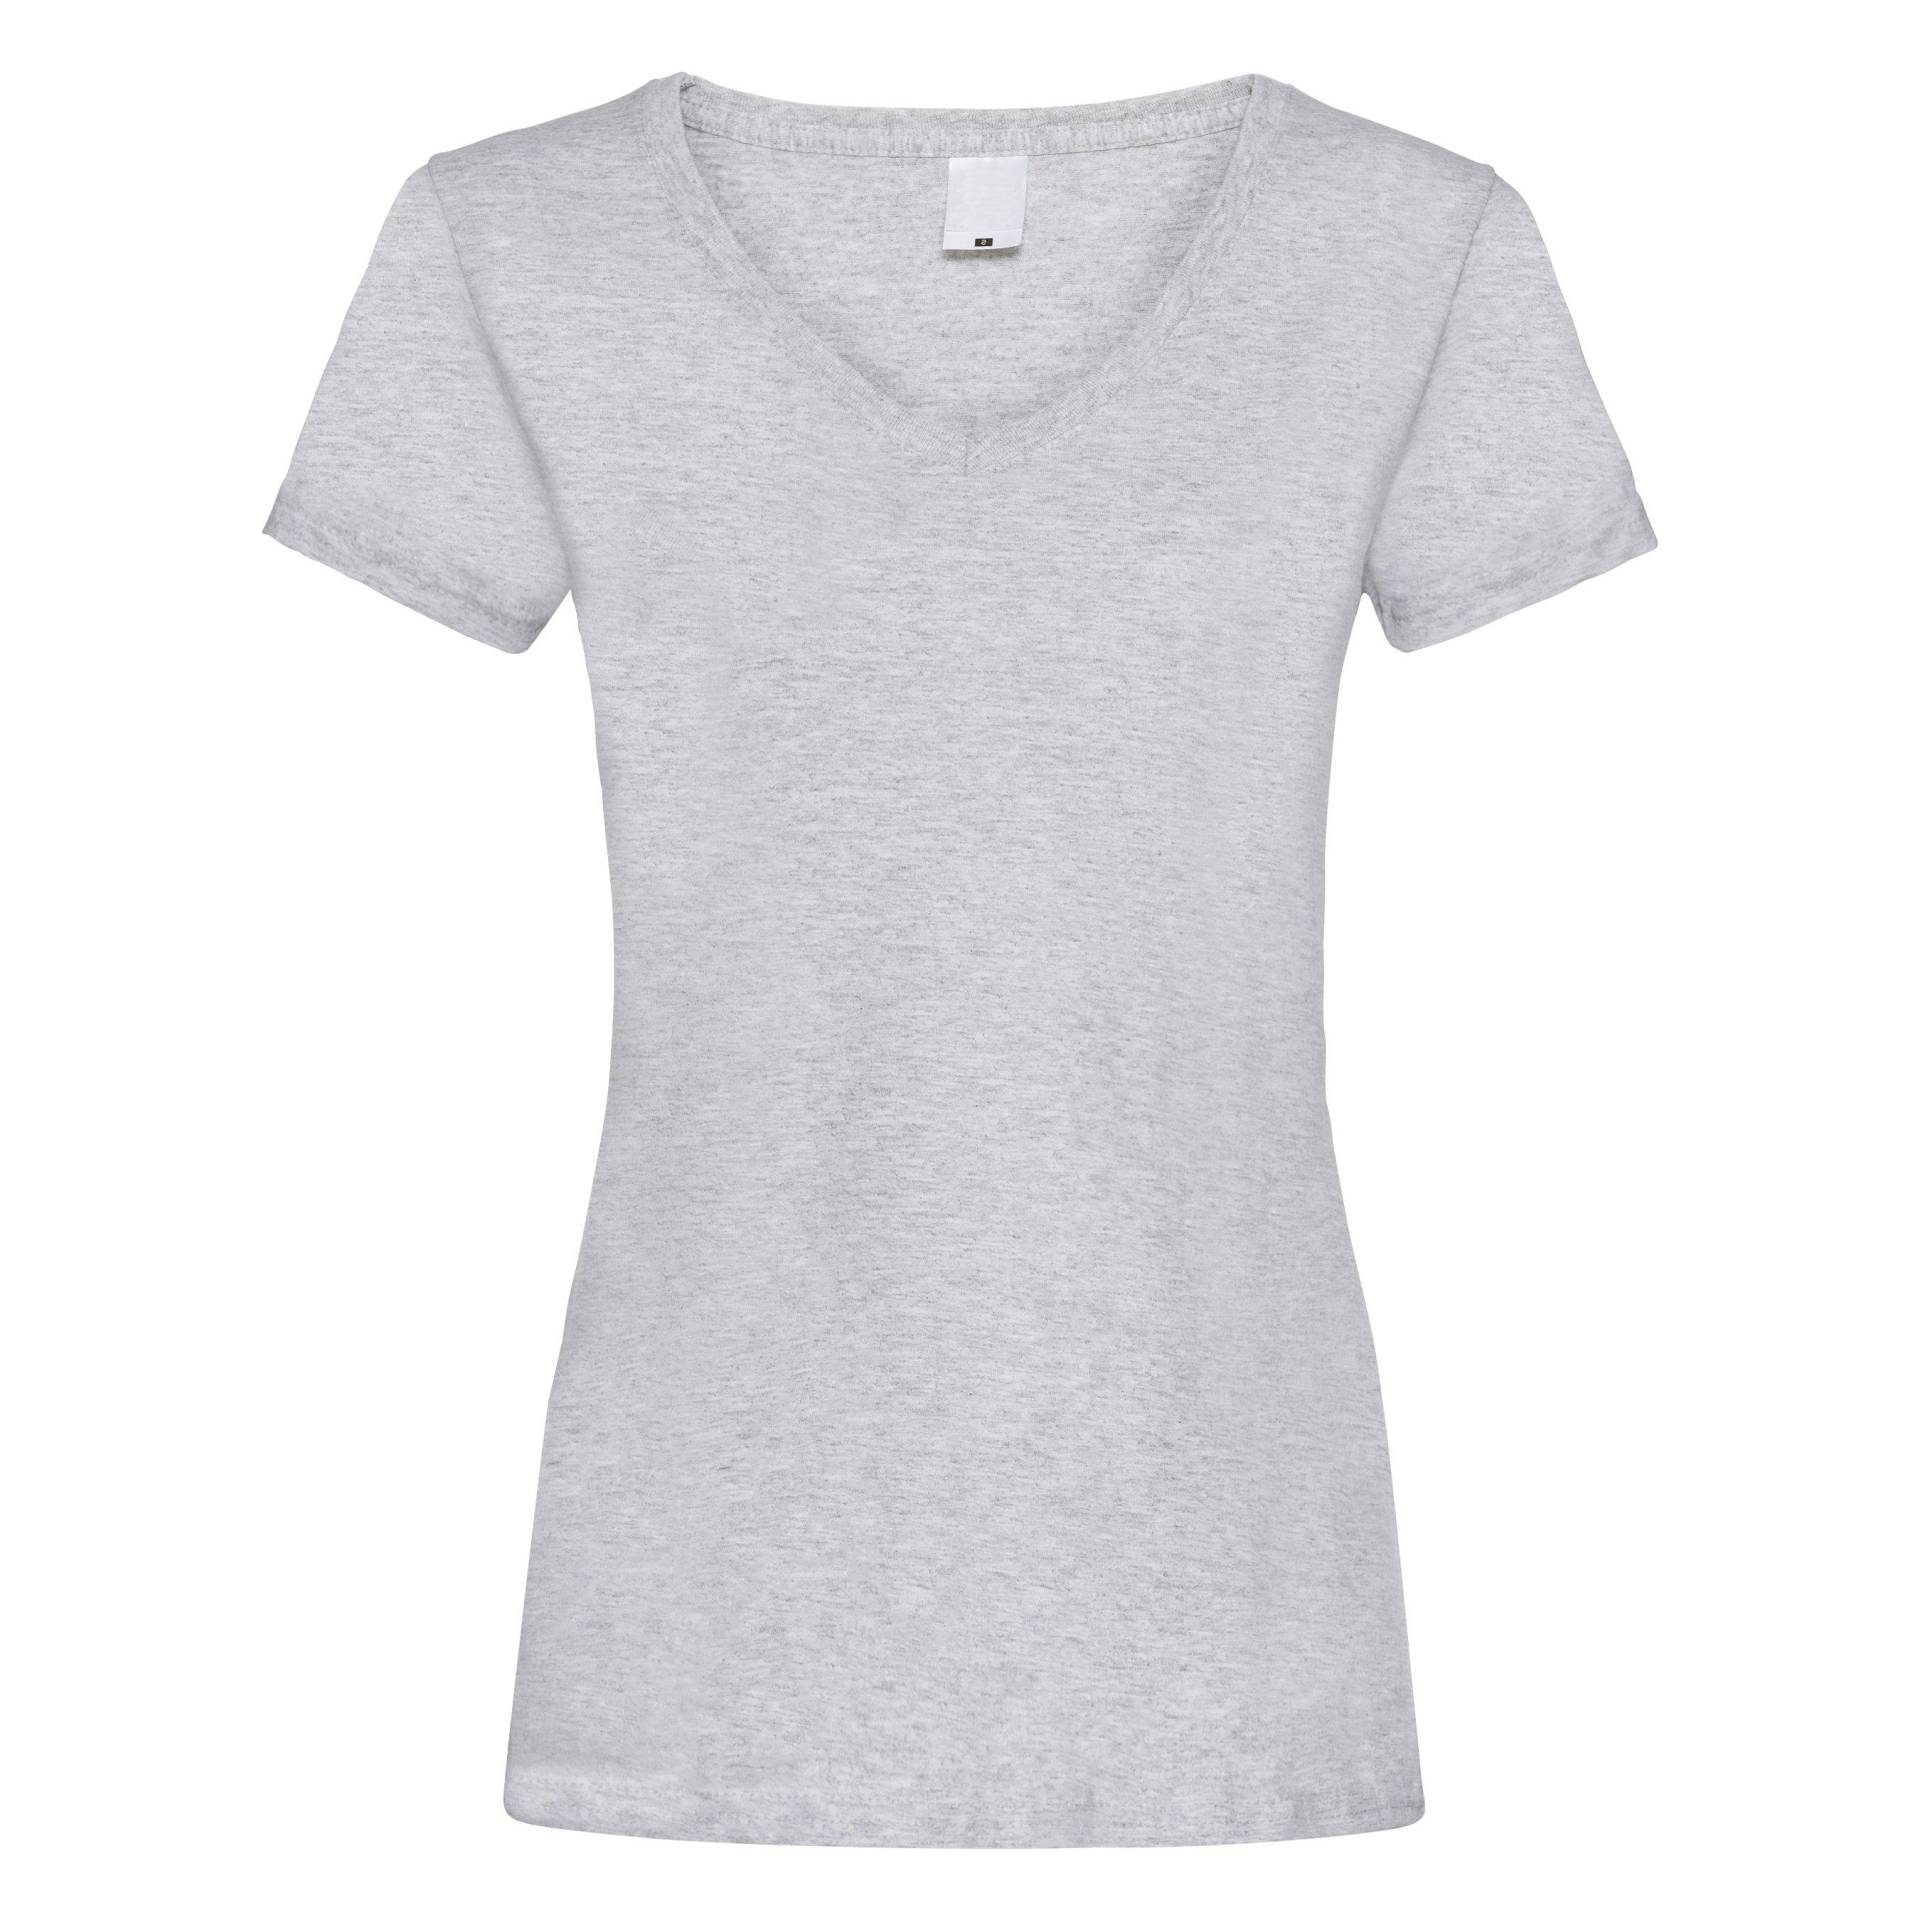 Value Fitted Vausschnitt Kurzarm Tshirt Damen Taubengrau XS von Universal Textiles